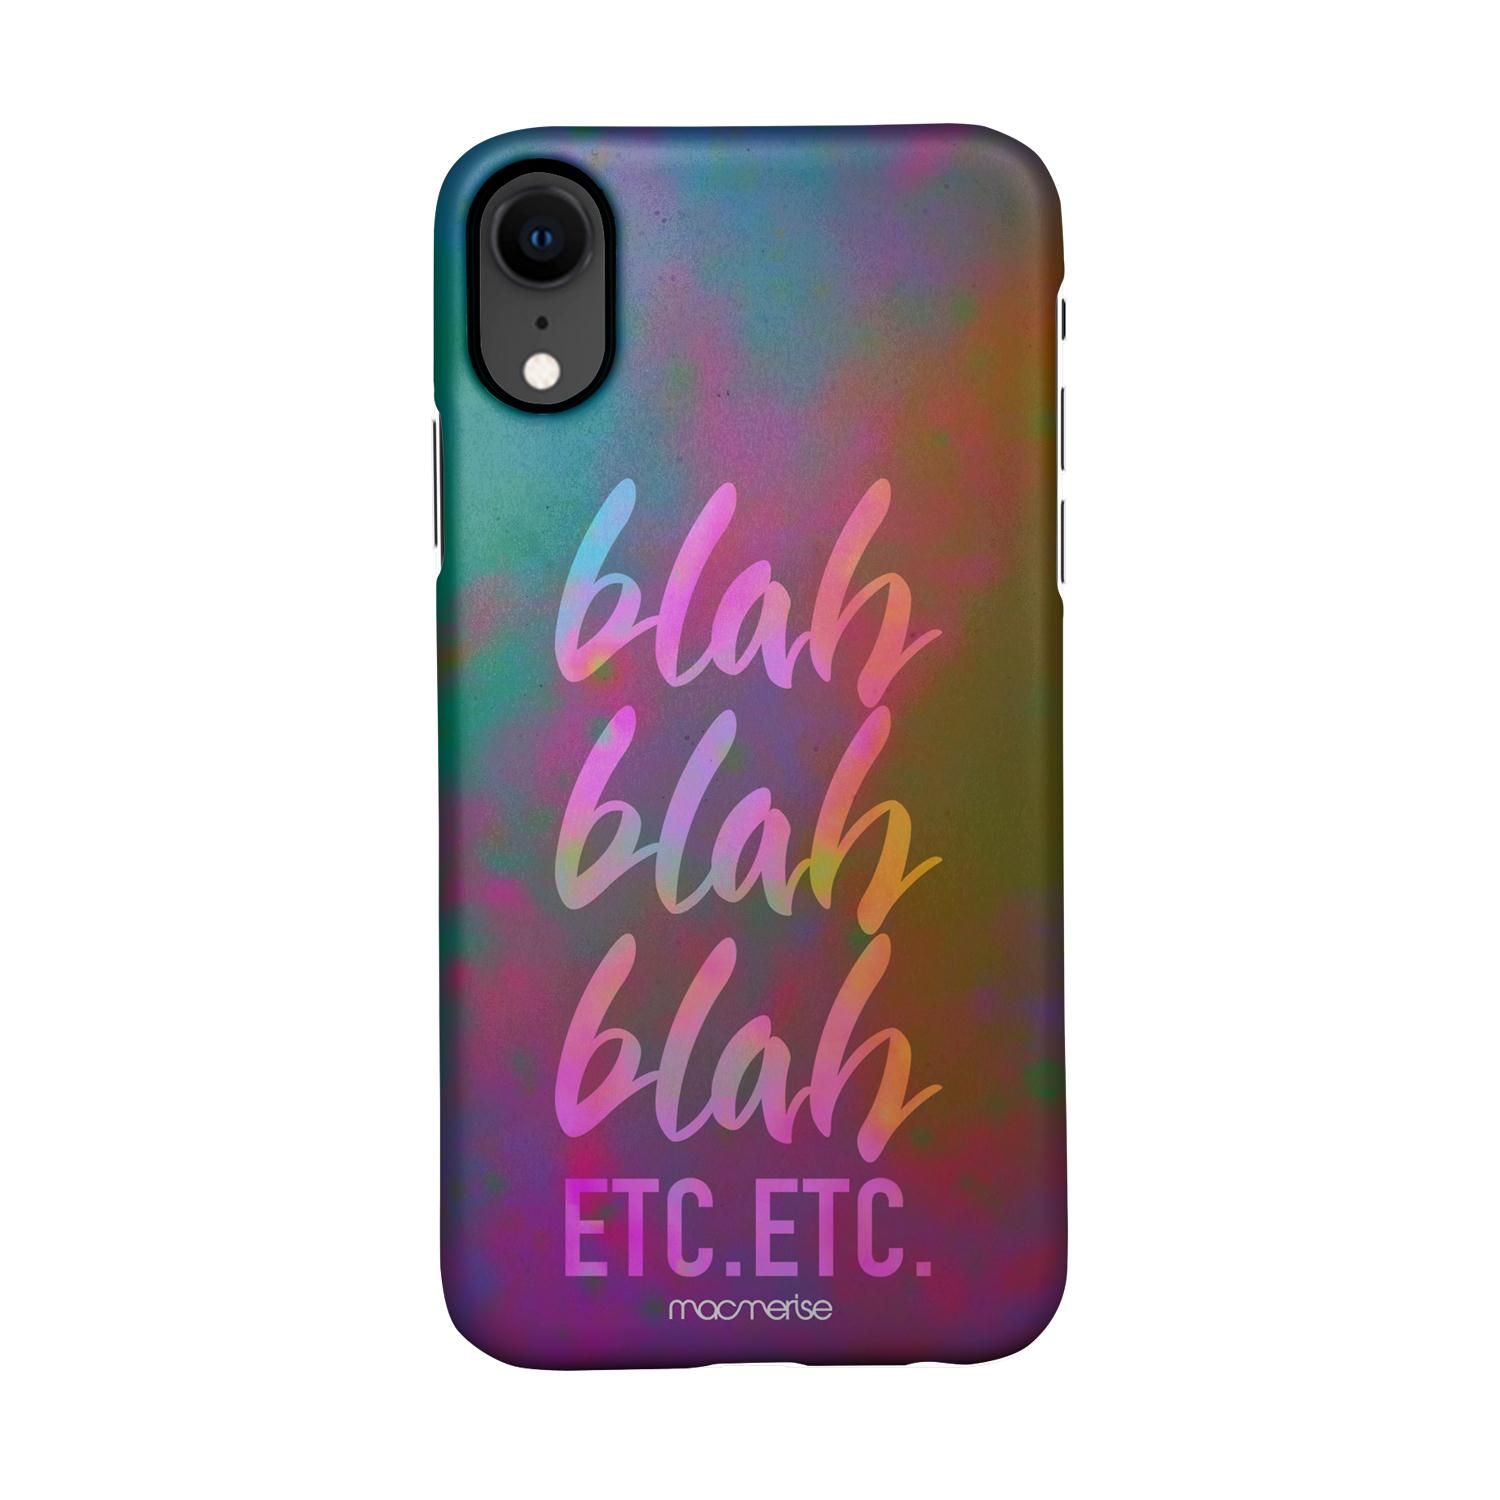 Buy Blah Blah - Sleek Phone Case for iPhone XR Online